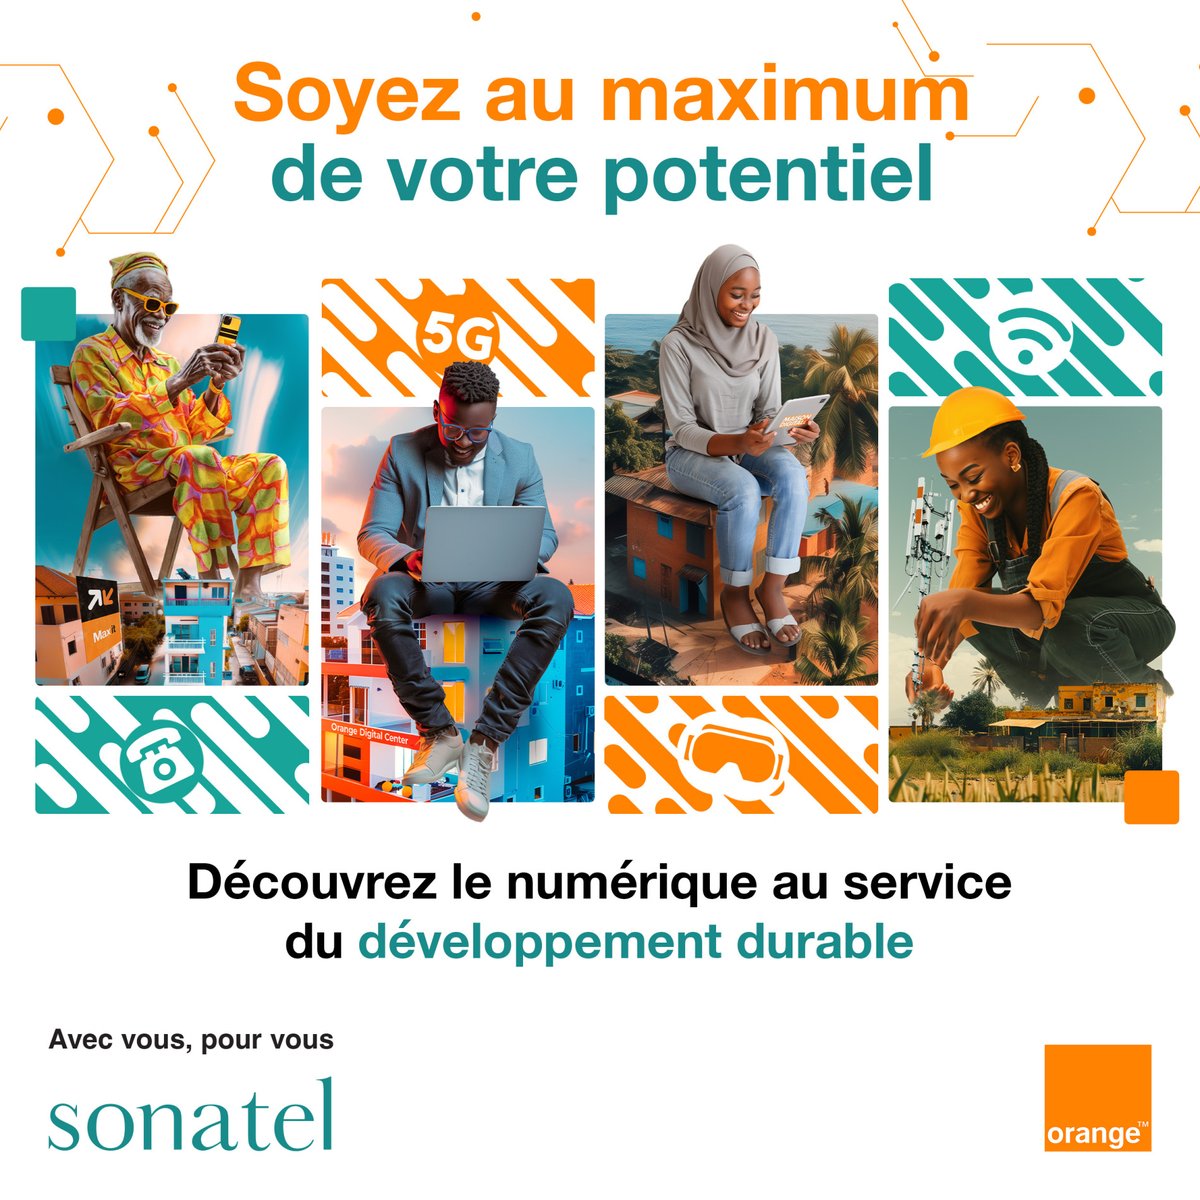 Soyez au maximum de votre potentiel !

A Sonatel, notre engagement en faveur de l’inclusion numérique et sociale au Sénégal a pour but de permettre à chacun de vous de libérer son potentiel. 

La Journée Mondiale des Télécommunications dont le thème de cette année est «…